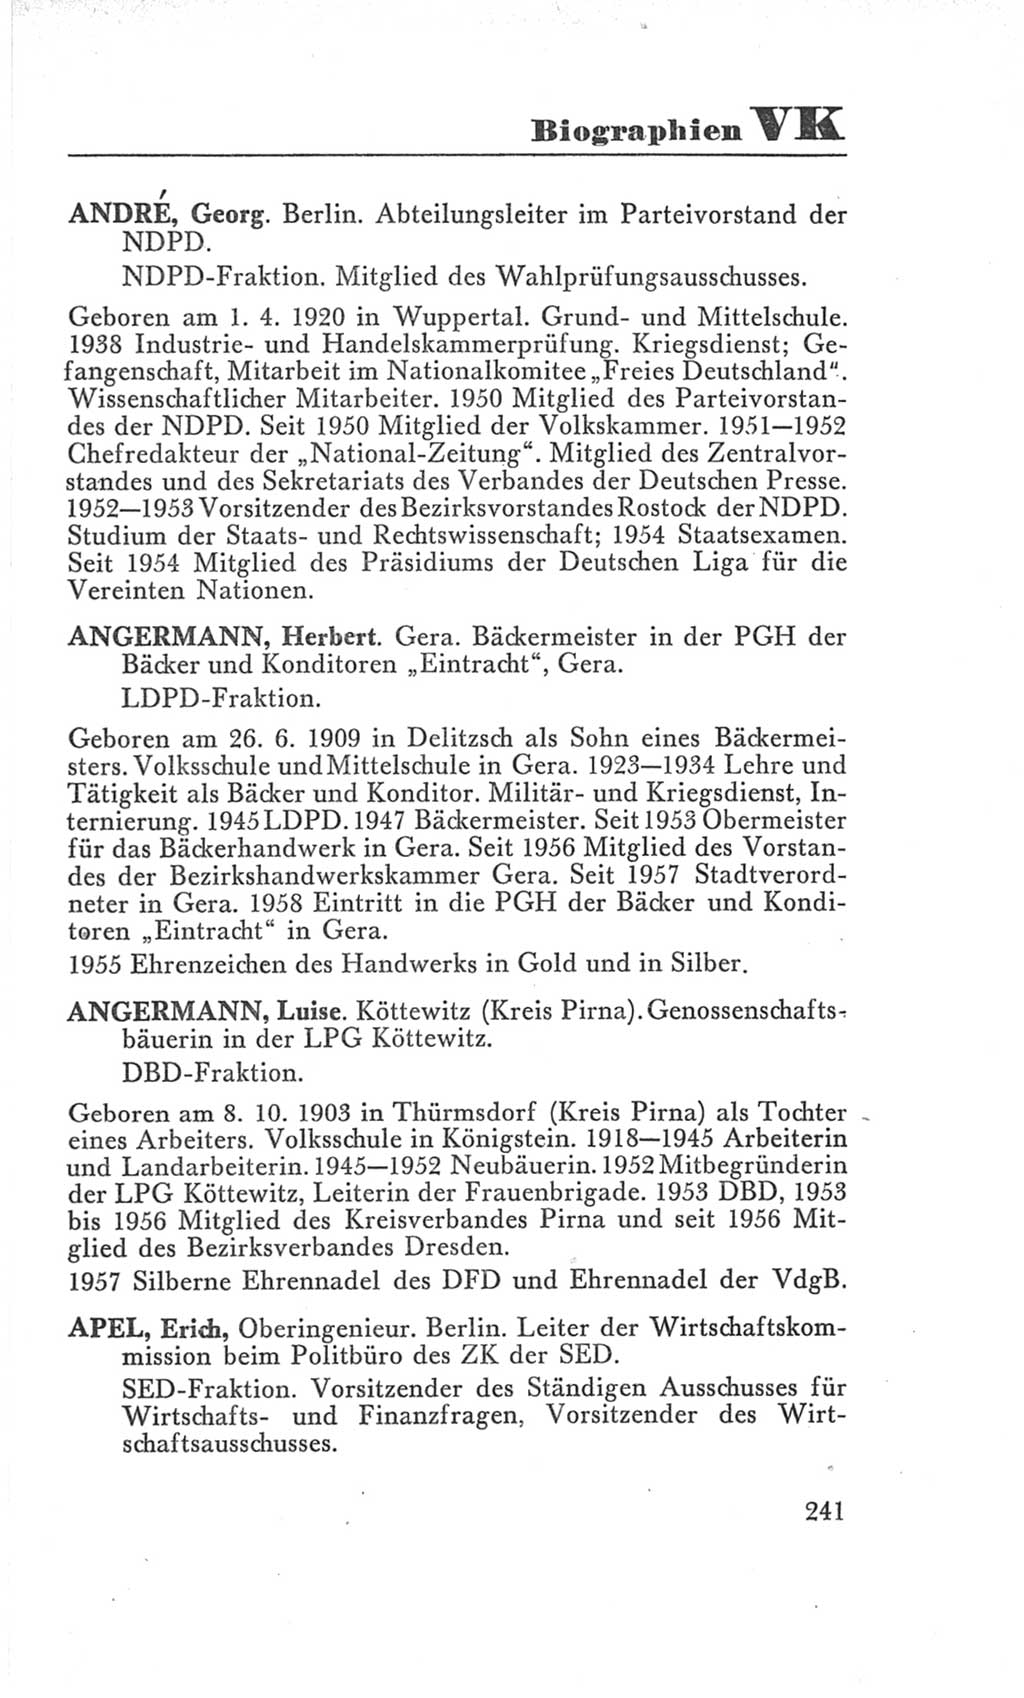 Handbuch der Volkskammer (VK) der Deutschen Demokratischen Republik (DDR), 3. Wahlperiode 1958-1963, Seite 241 (Hdb. VK. DDR 3. WP. 1958-1963, S. 241)